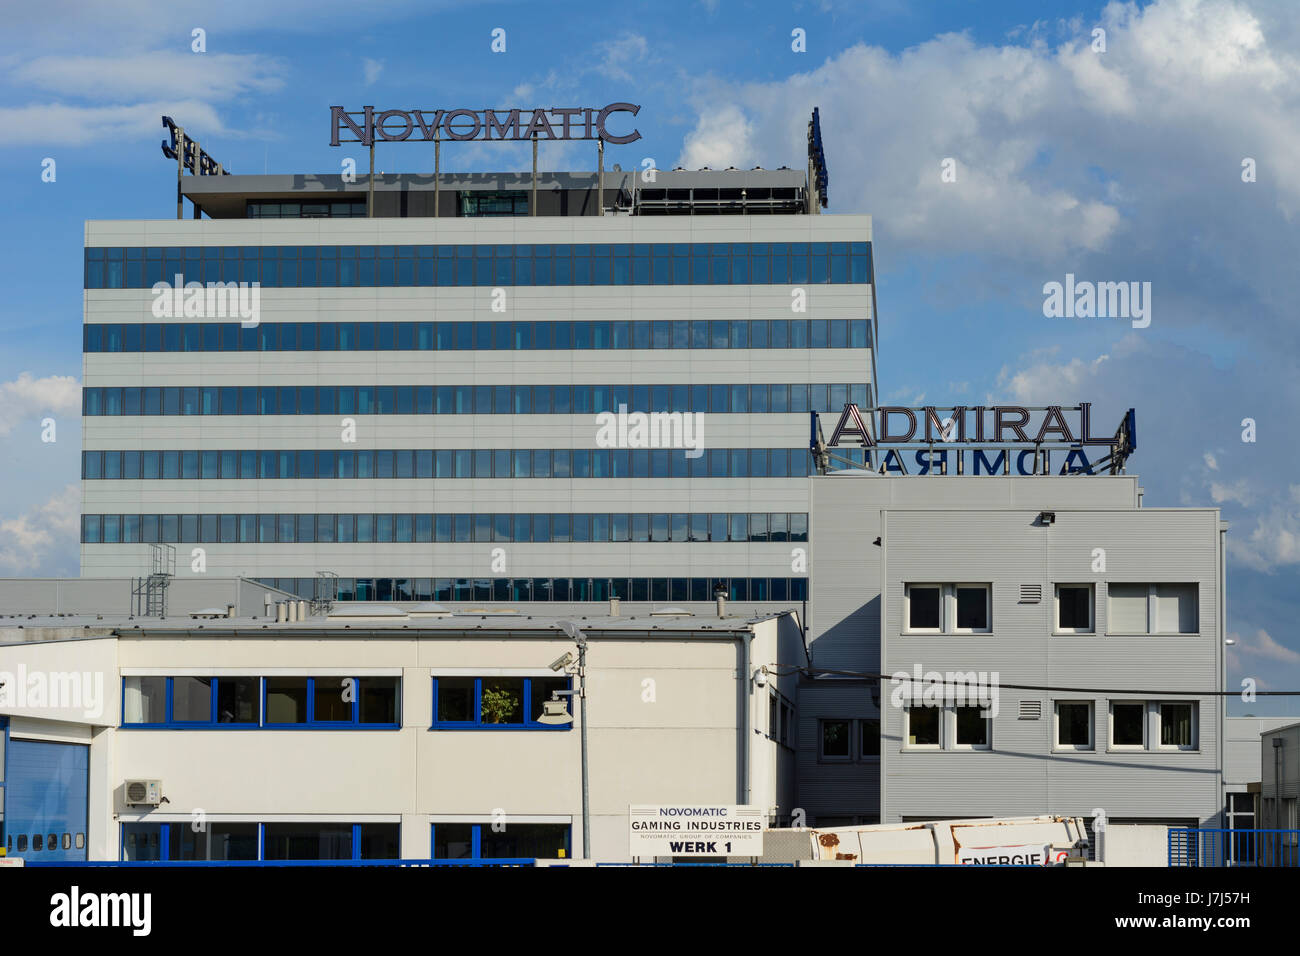 Novomatic Austrian Gaming Industries und Admiral Hauptsitz, Gumpoldskirchen, Wienerwald, Wienerwald, Niederösterreich, Niederösterreich, Österreich Stockfoto